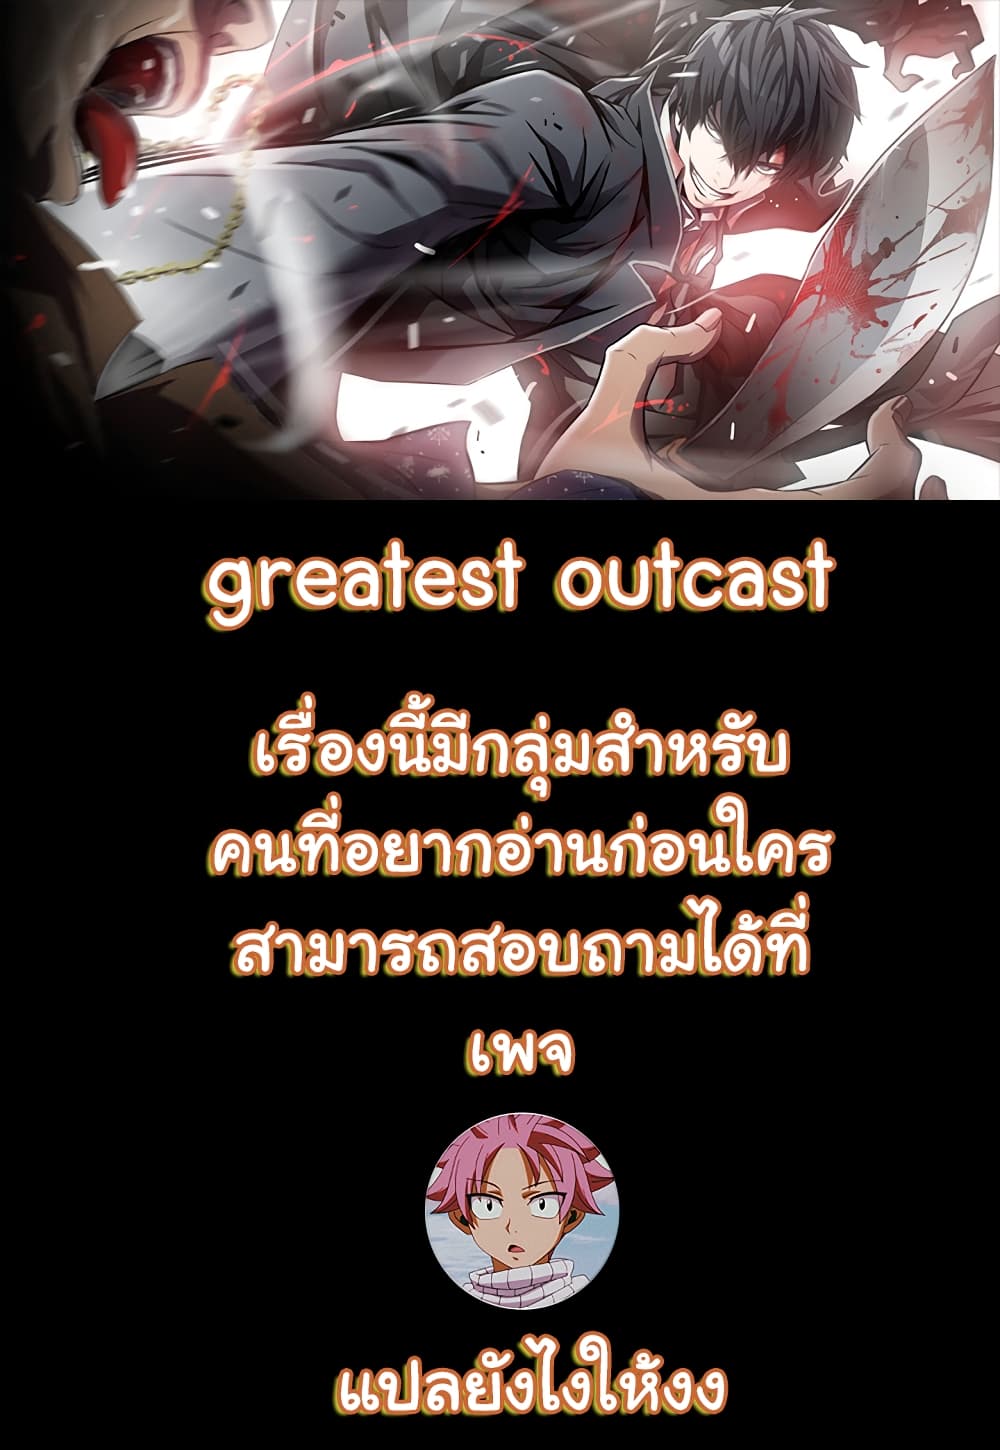 Greatest Outcast 5-5